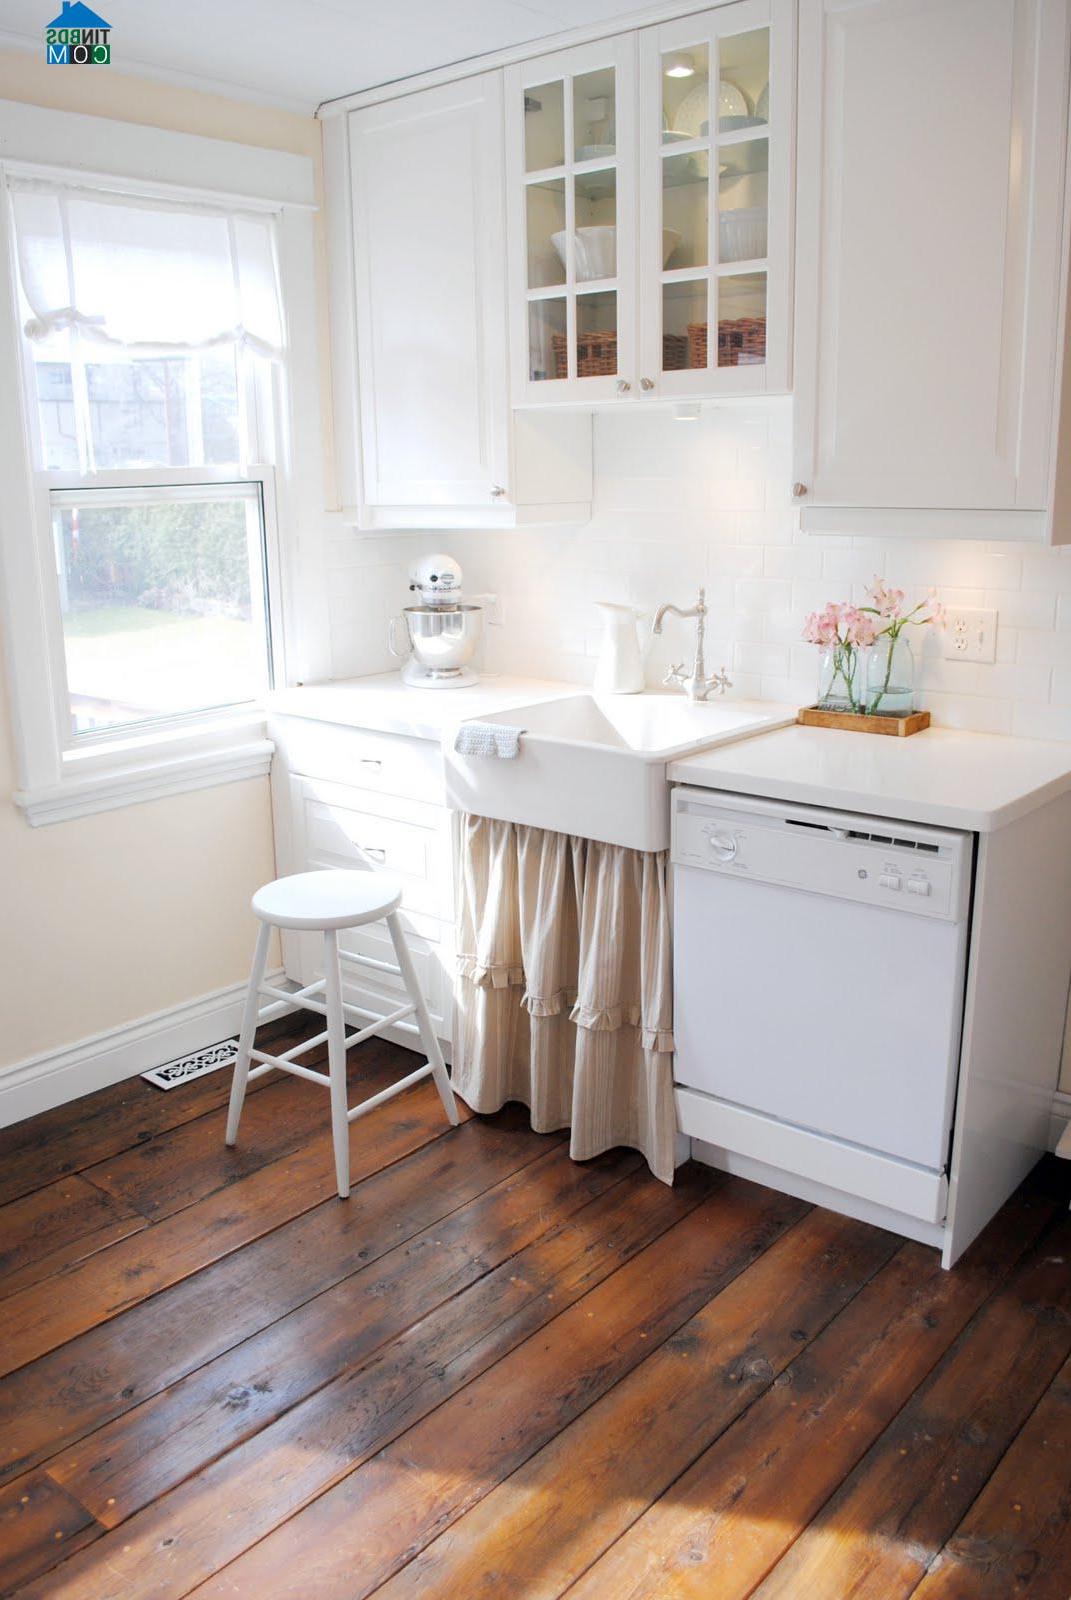 Màu nâu của gỗ sẽ giúp phòng bếp màu trắng đơn giản trở nên ấm cúng hơn